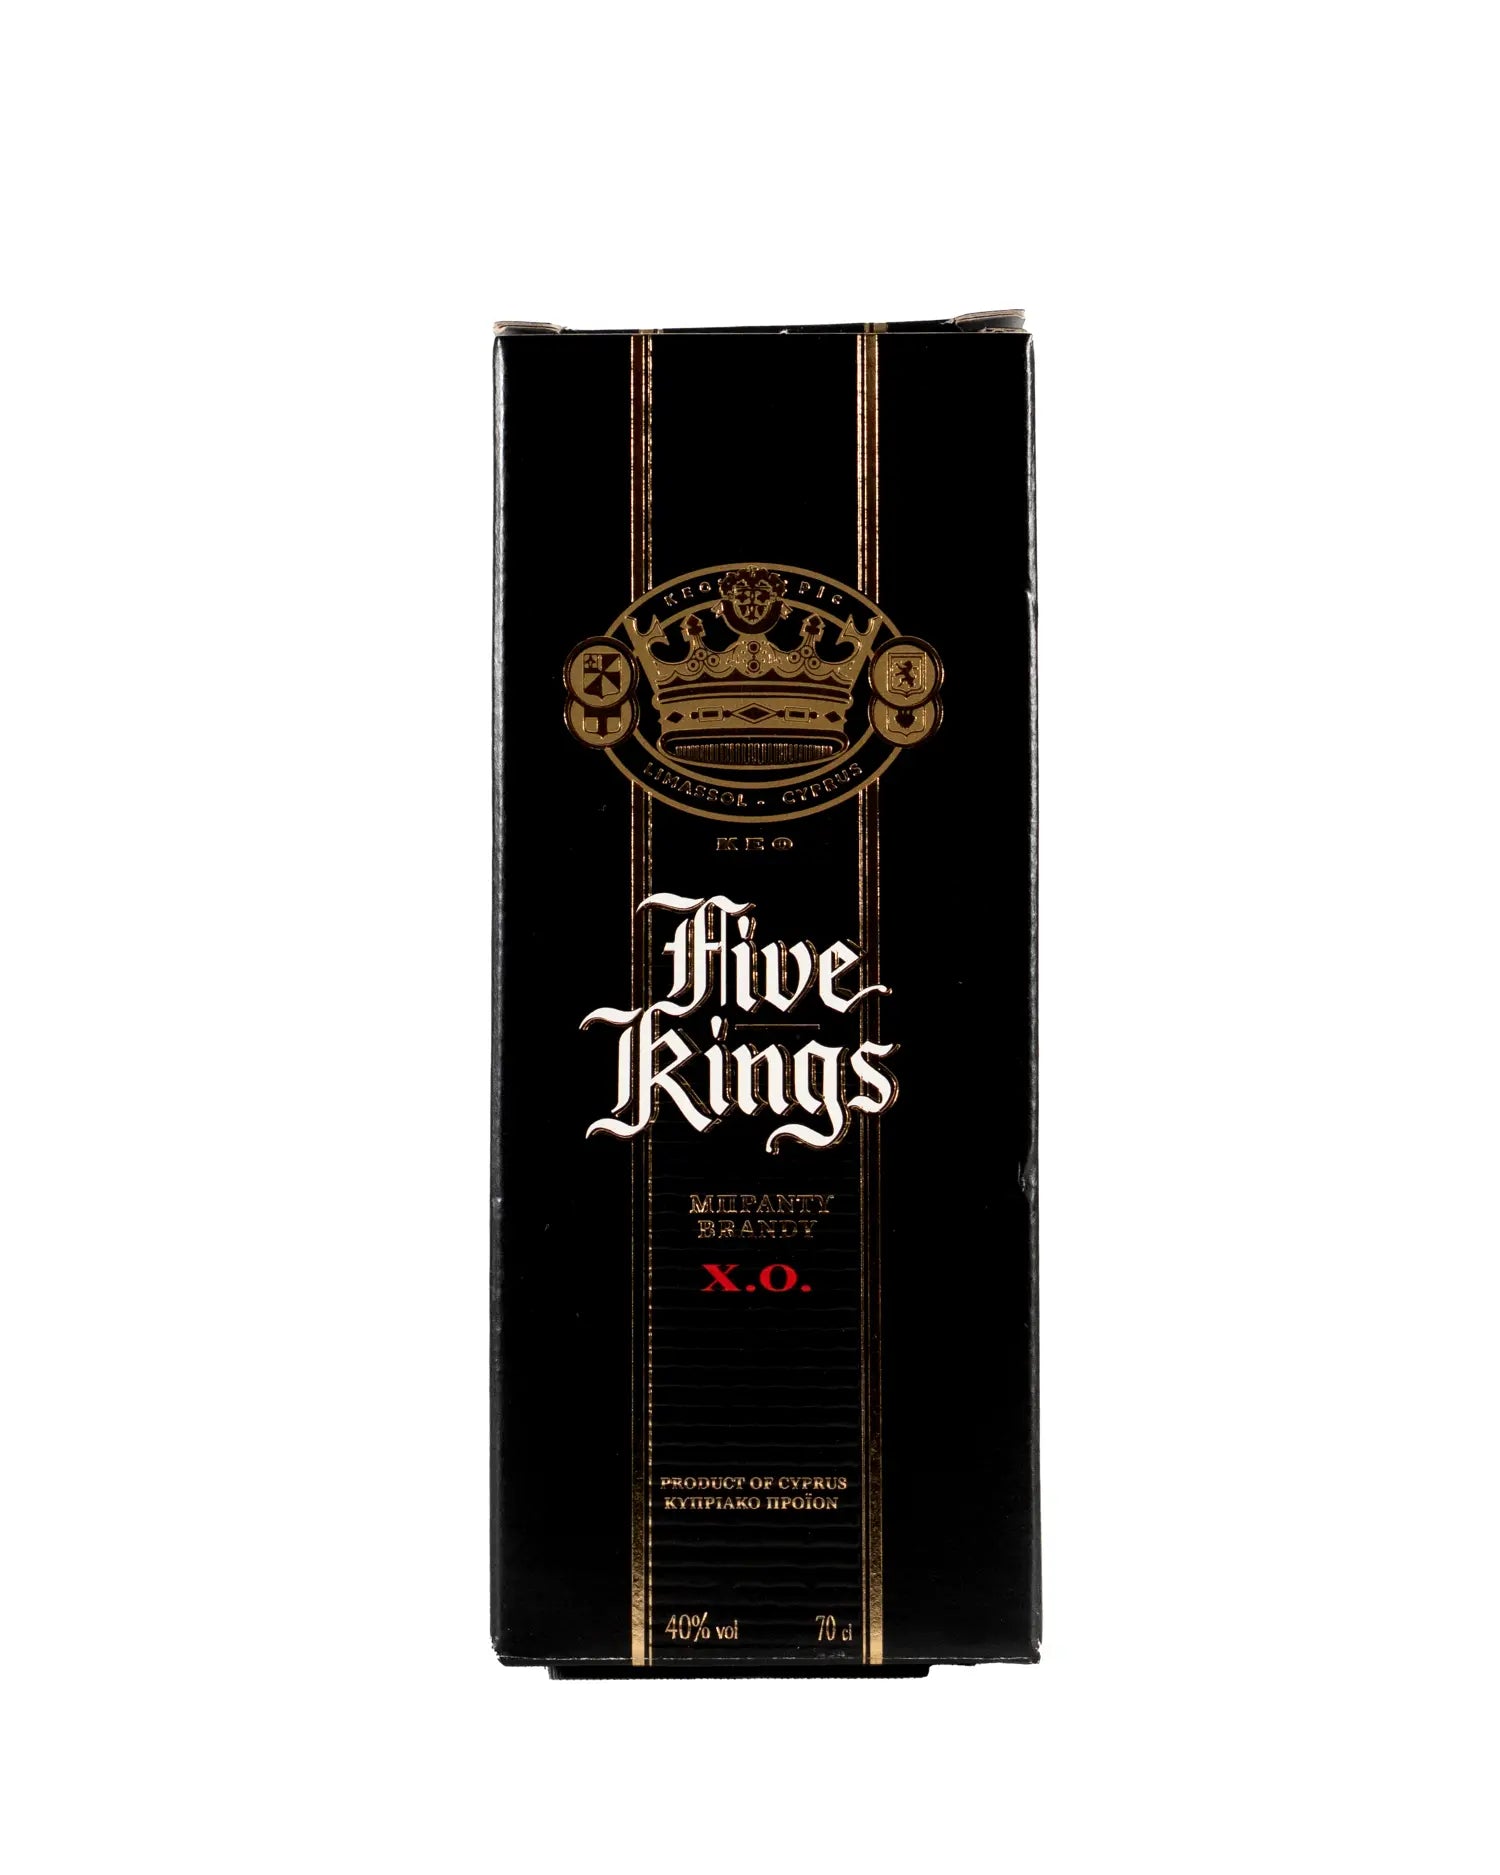 Keo Five Kings Brandy - Flasche 0,70 Liter